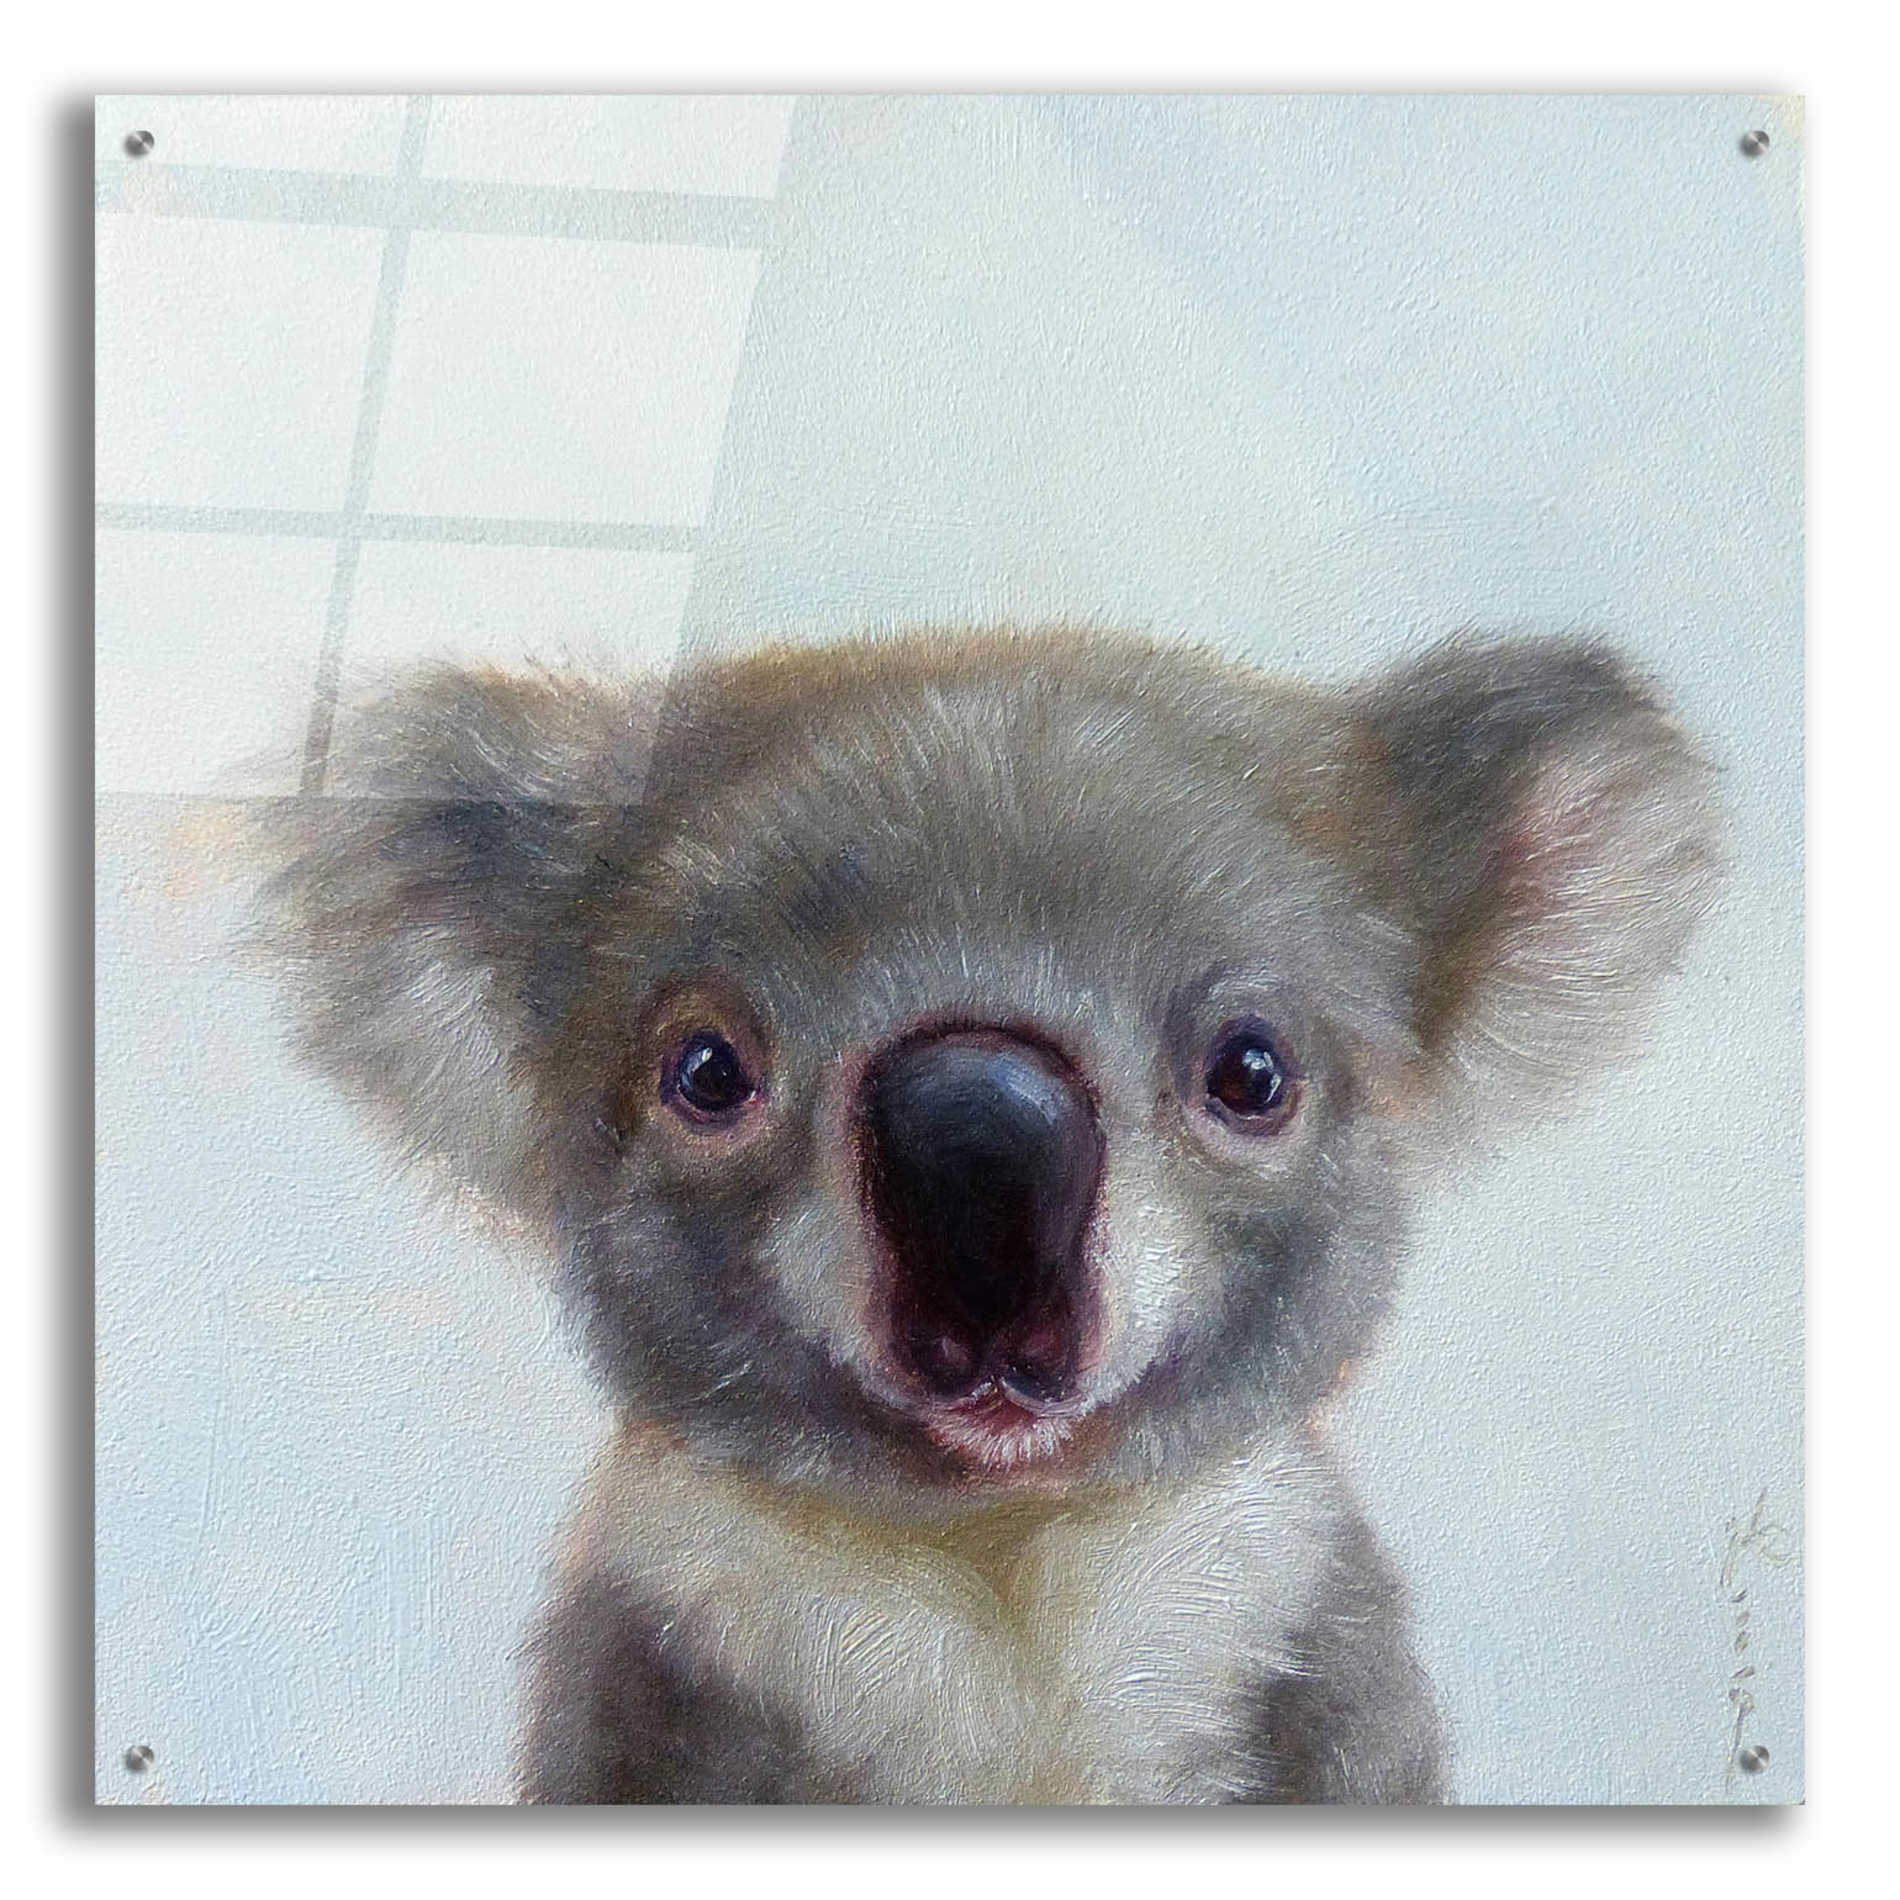 Epic Art 'Lil Koala' by Lucia Heffernan, Acrylic Glass Wall Art,36x36